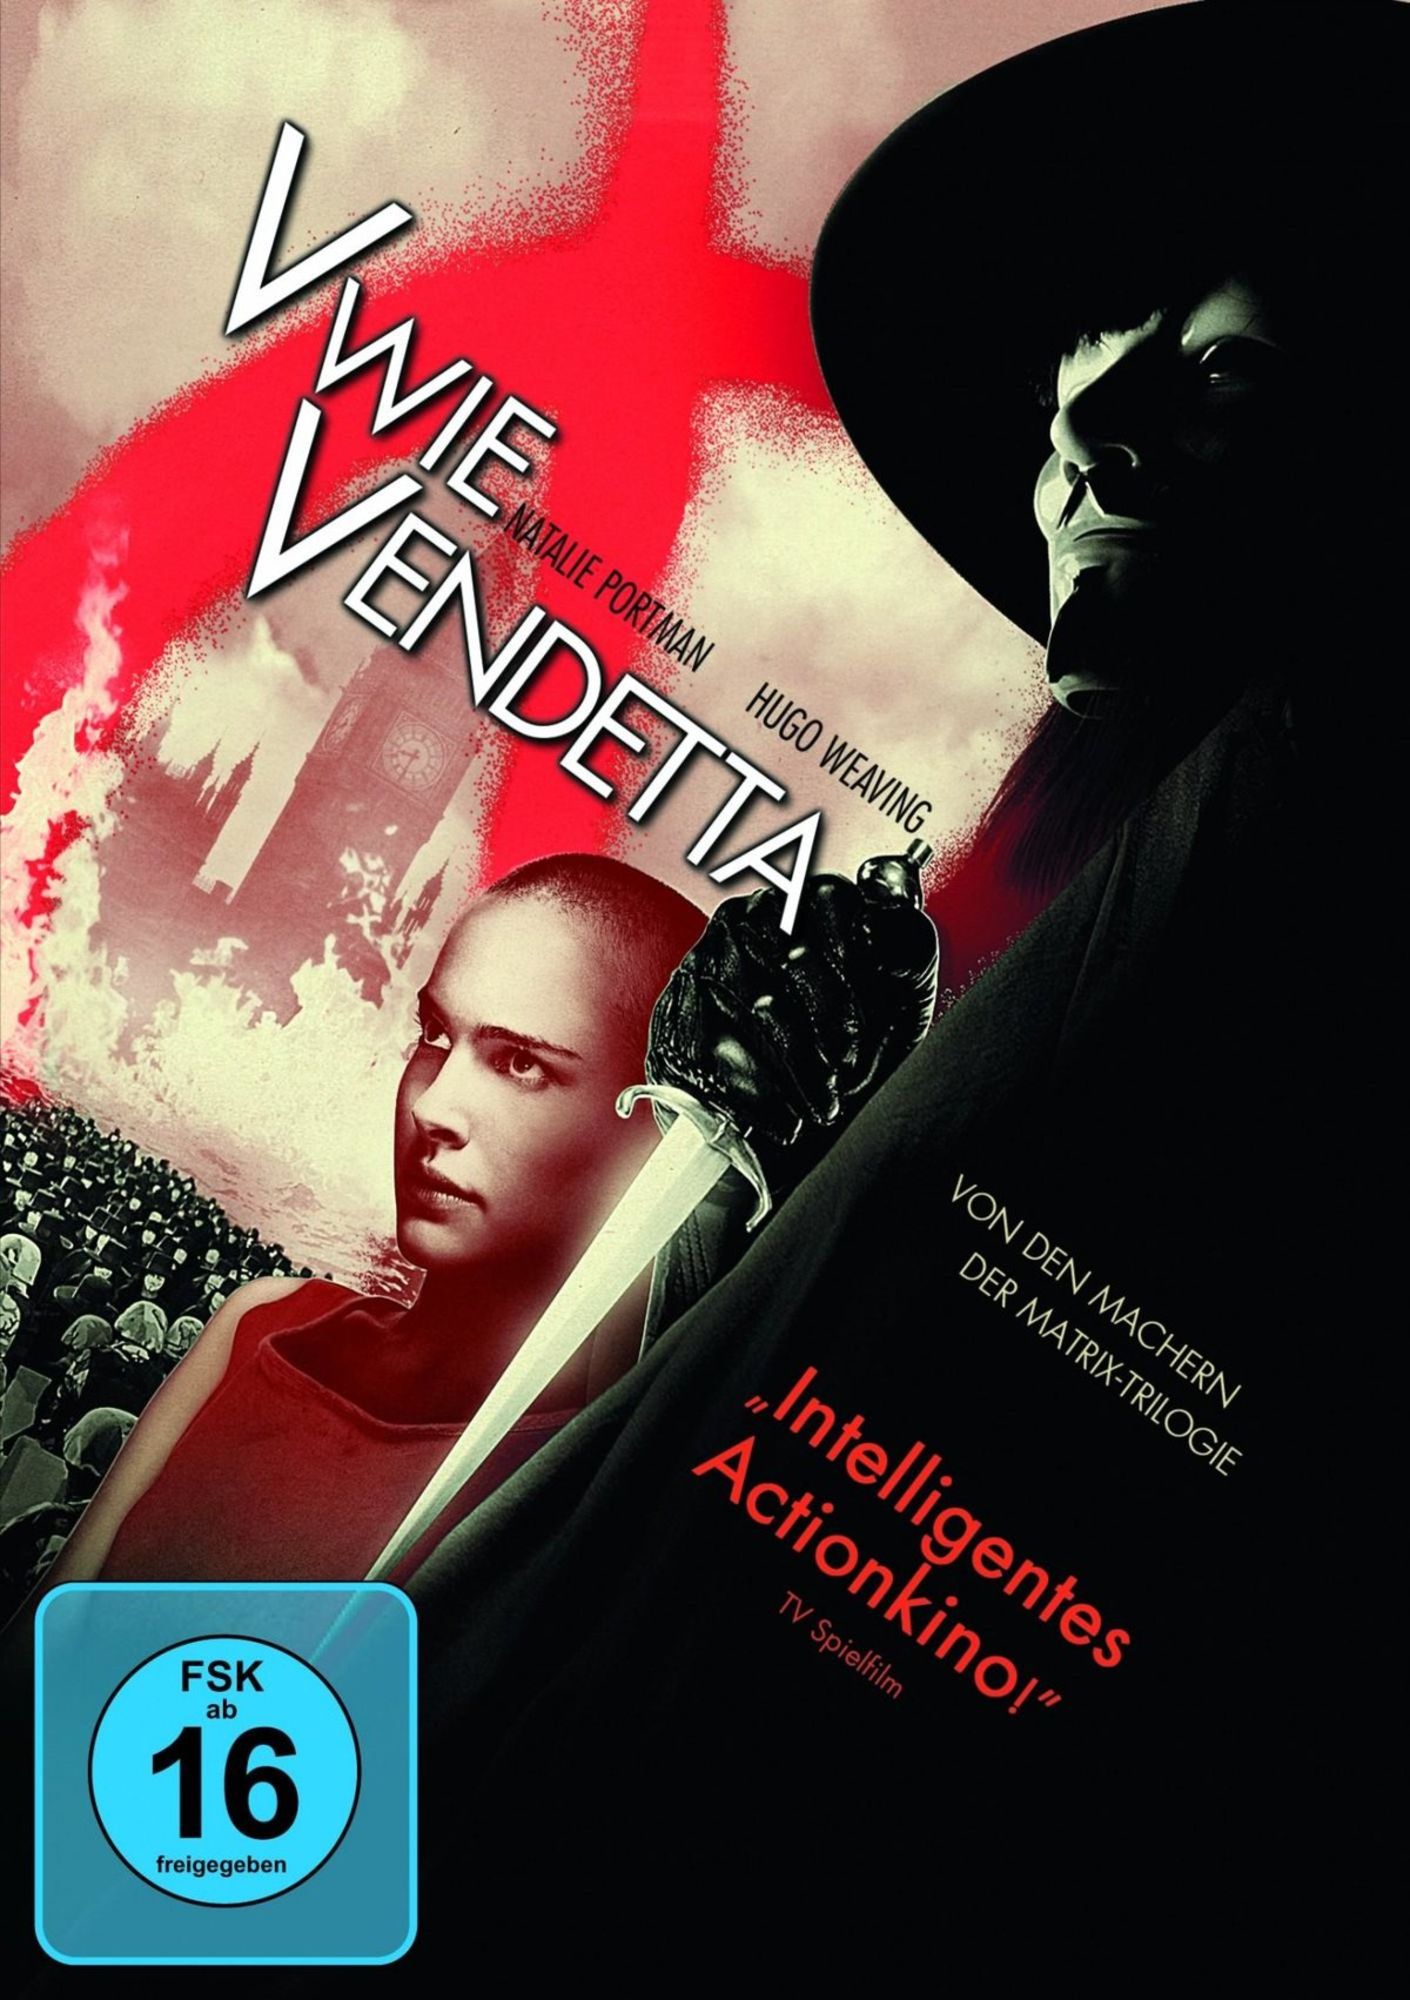 Dvd . V de Vingança . Natalie Portman . Hugo Weaving . Warner Bros .  Original em Bom Estado, Filme e Série Warner Bros Usado 75540631